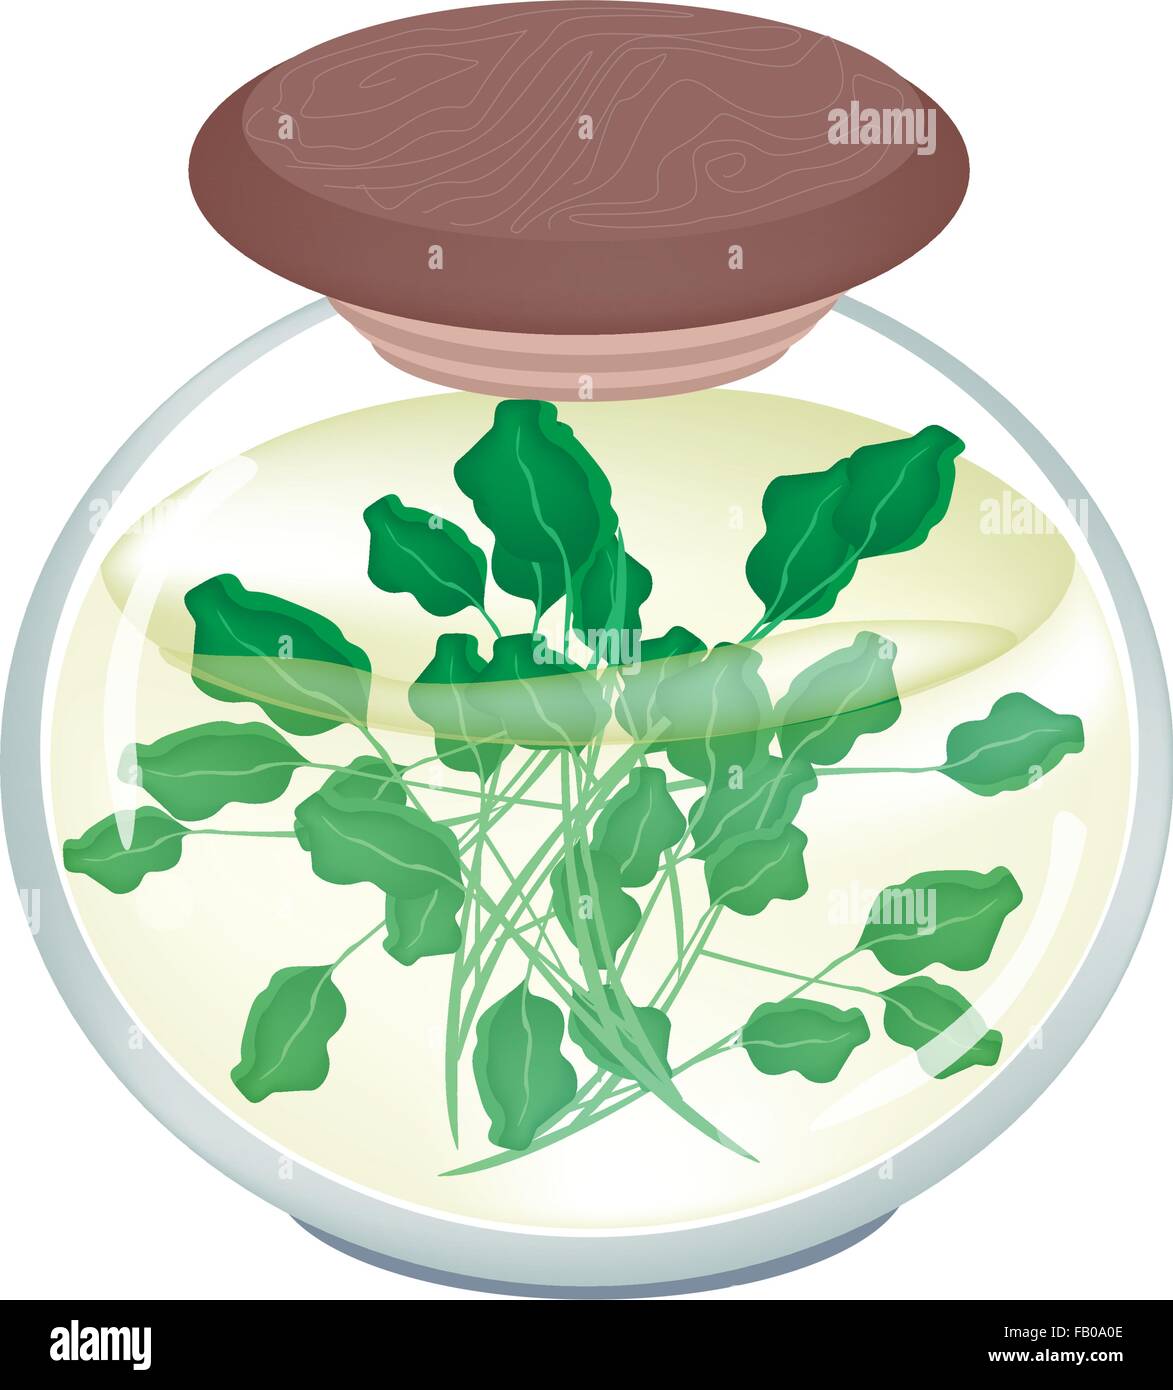 Gemüse- und Kräutergarten, eine Illustration des eingelegten Brunnenkresse oder Kapuzinerkresse Officinale in Salzlake, Essig und Salz in einem Glas Jar ich Stock Vektor